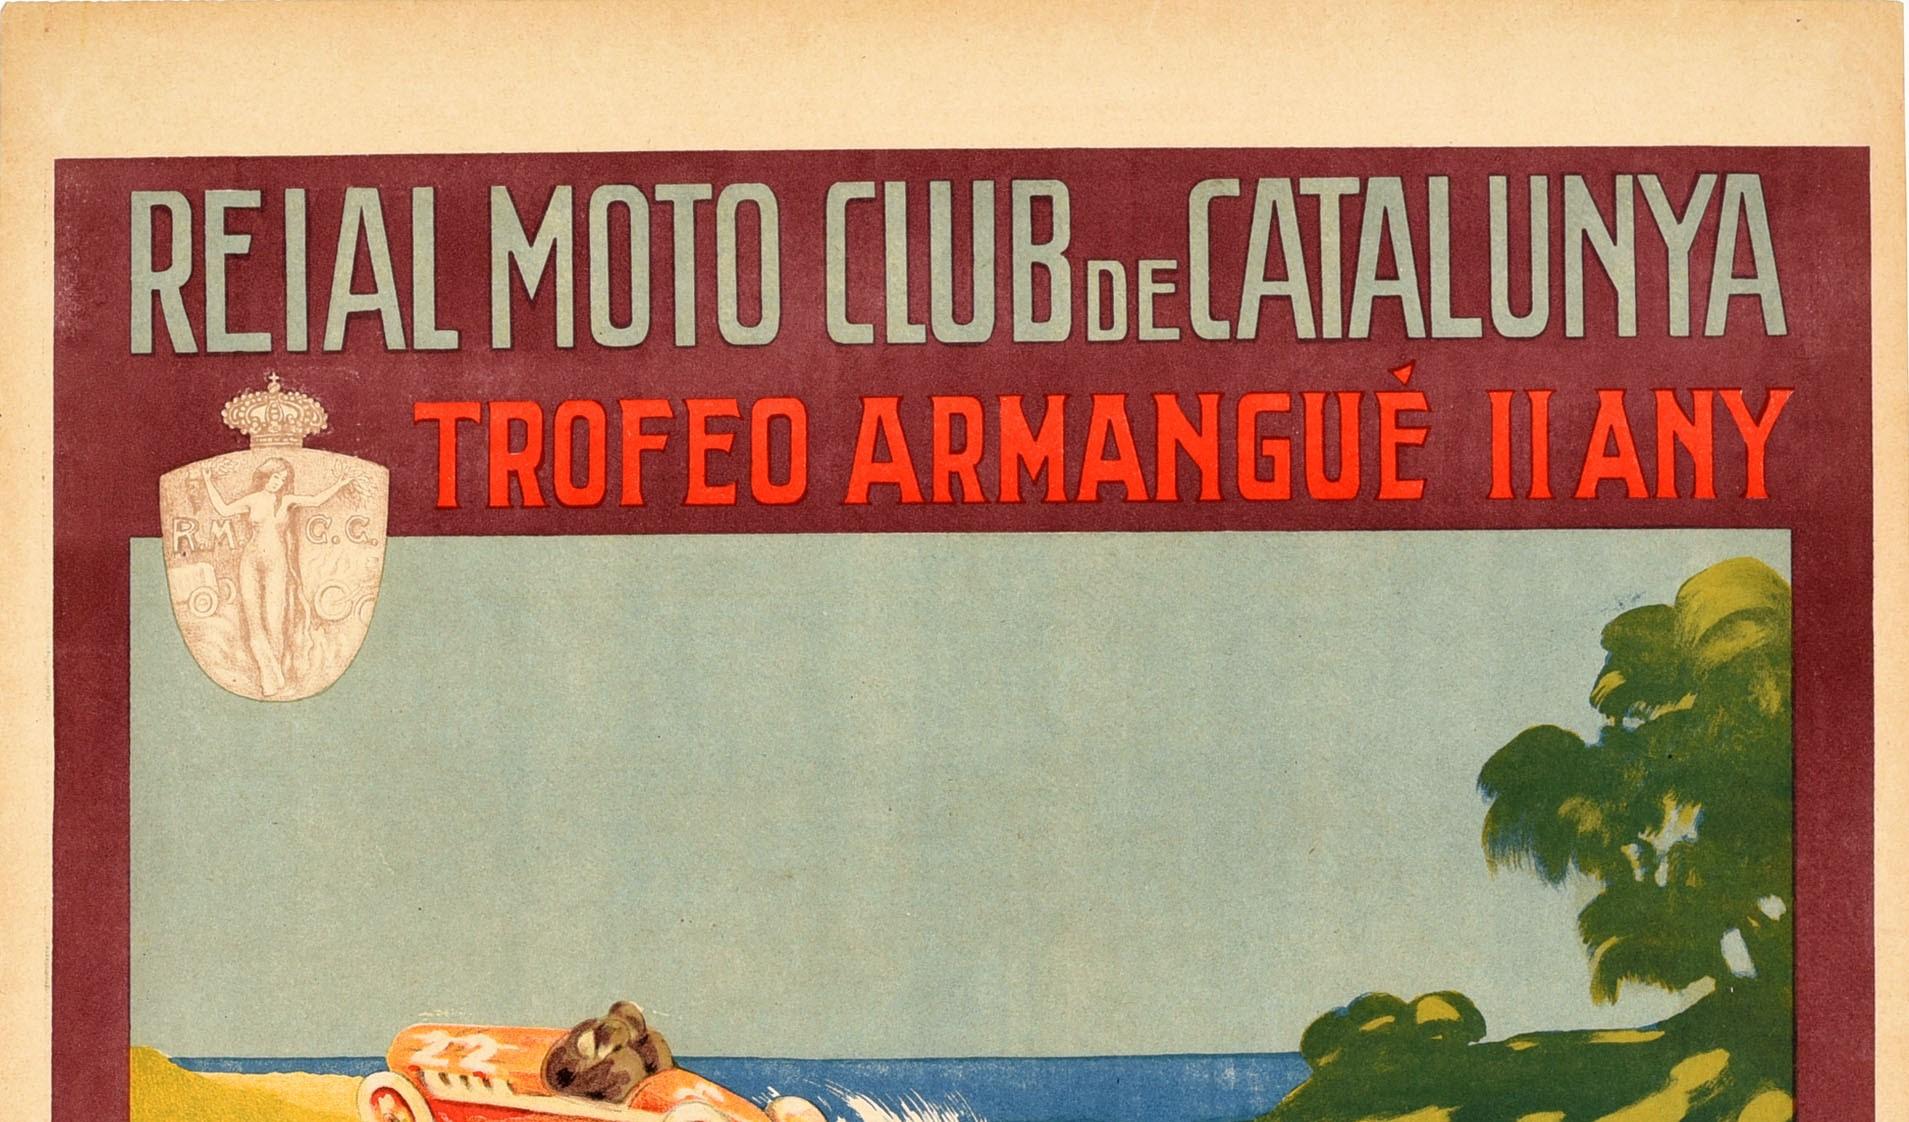 Affiche originale de course automobile d'époque annonçant le Trophée Armangué à Tarragone le 29 octobre 1922 organisé par le Reial Moto Club de Catalunya / Royal Moto Club de Catalogne. Illustration dynamique de deux hommes dans une voiture de